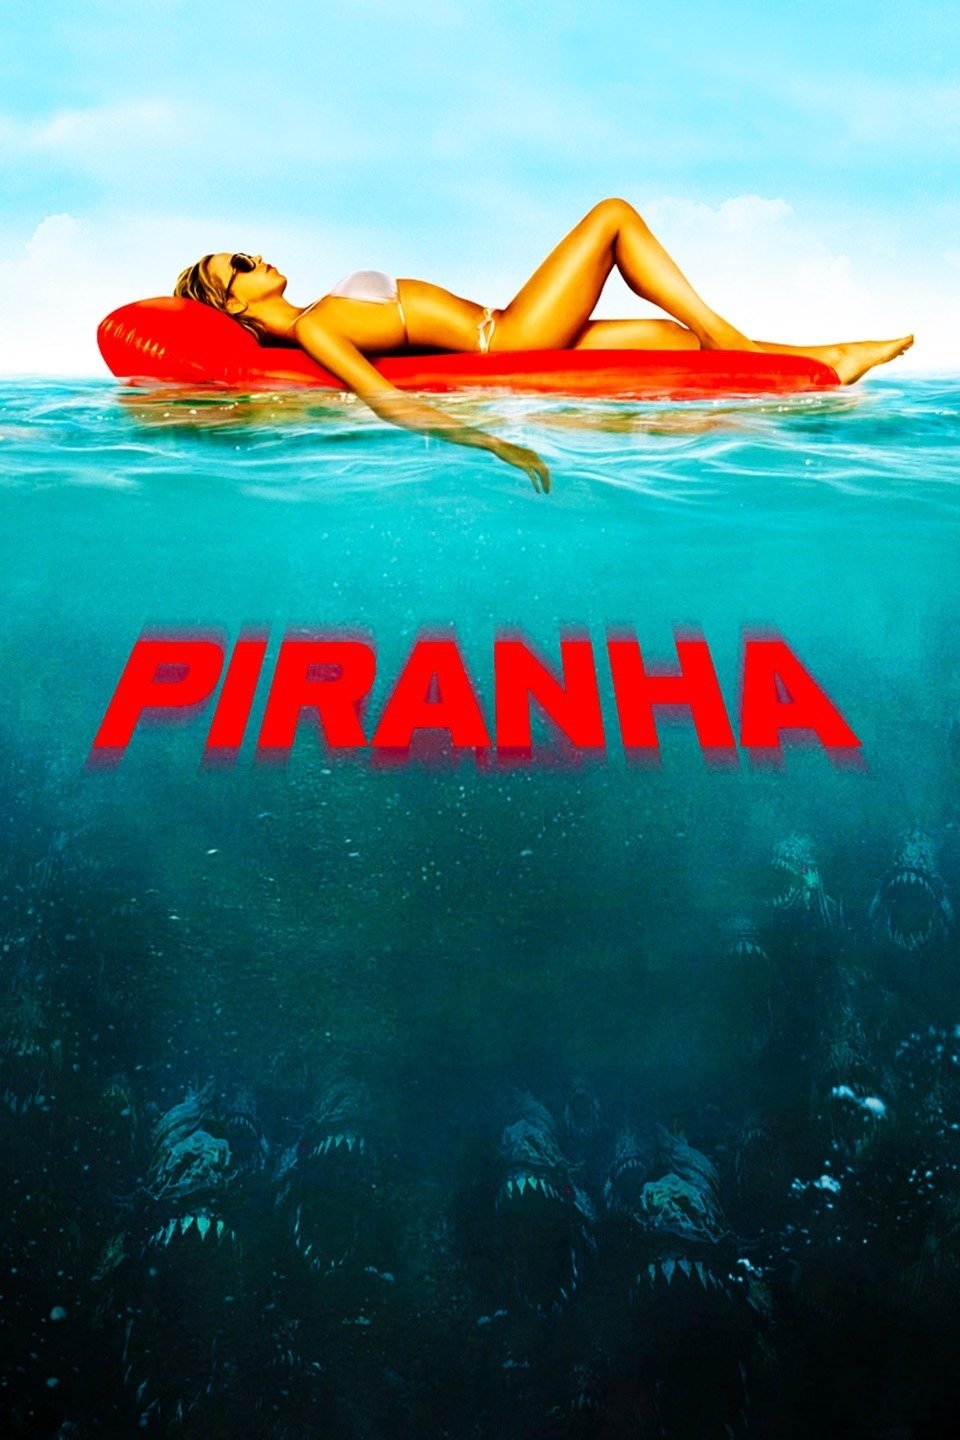 Piranha 3d soundtrack download torrent